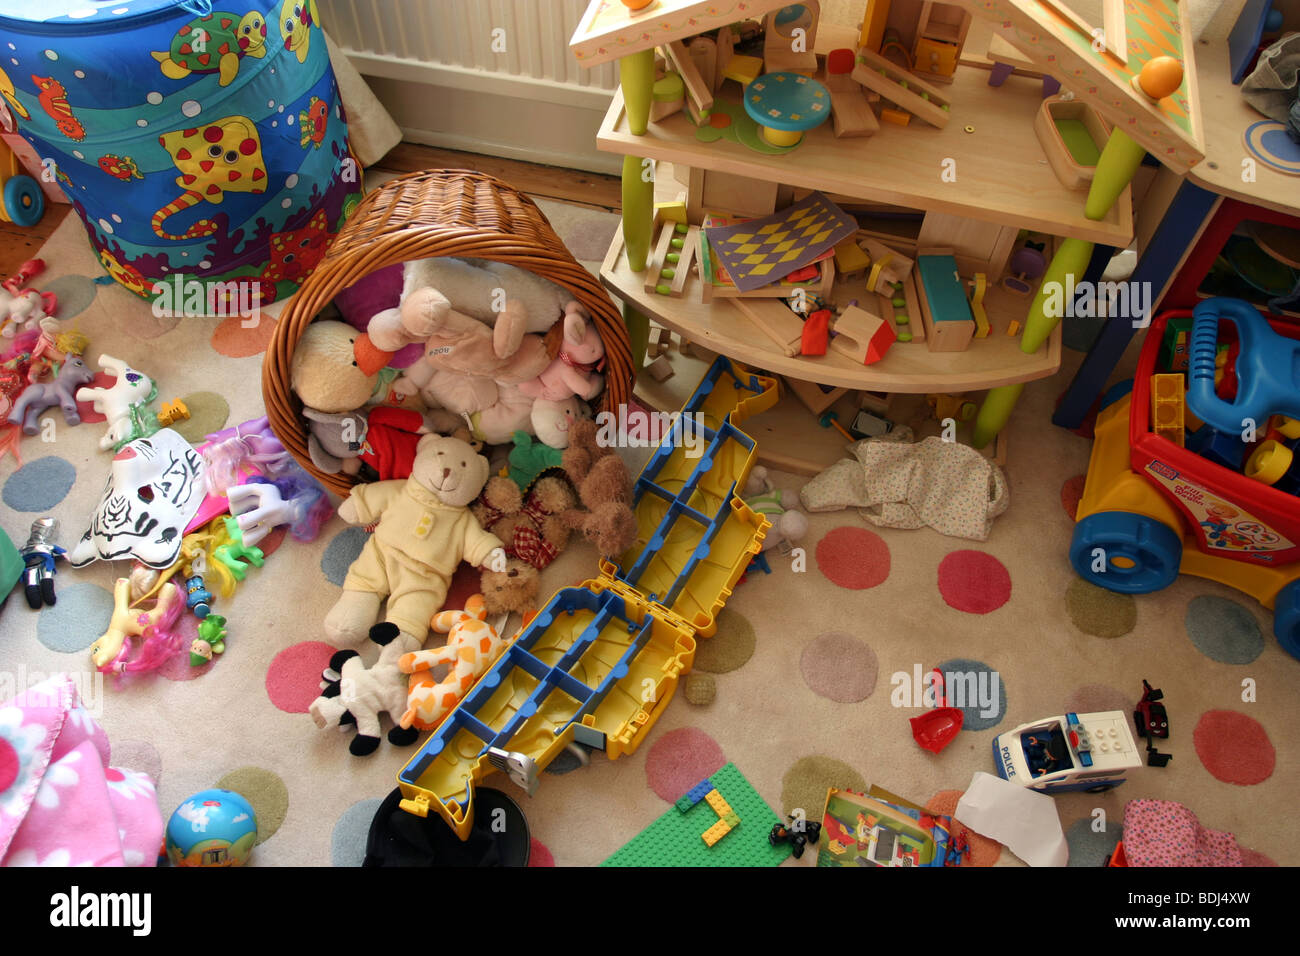 Ein unordentliches Kinderzimmer Stockfotografie - Alamy